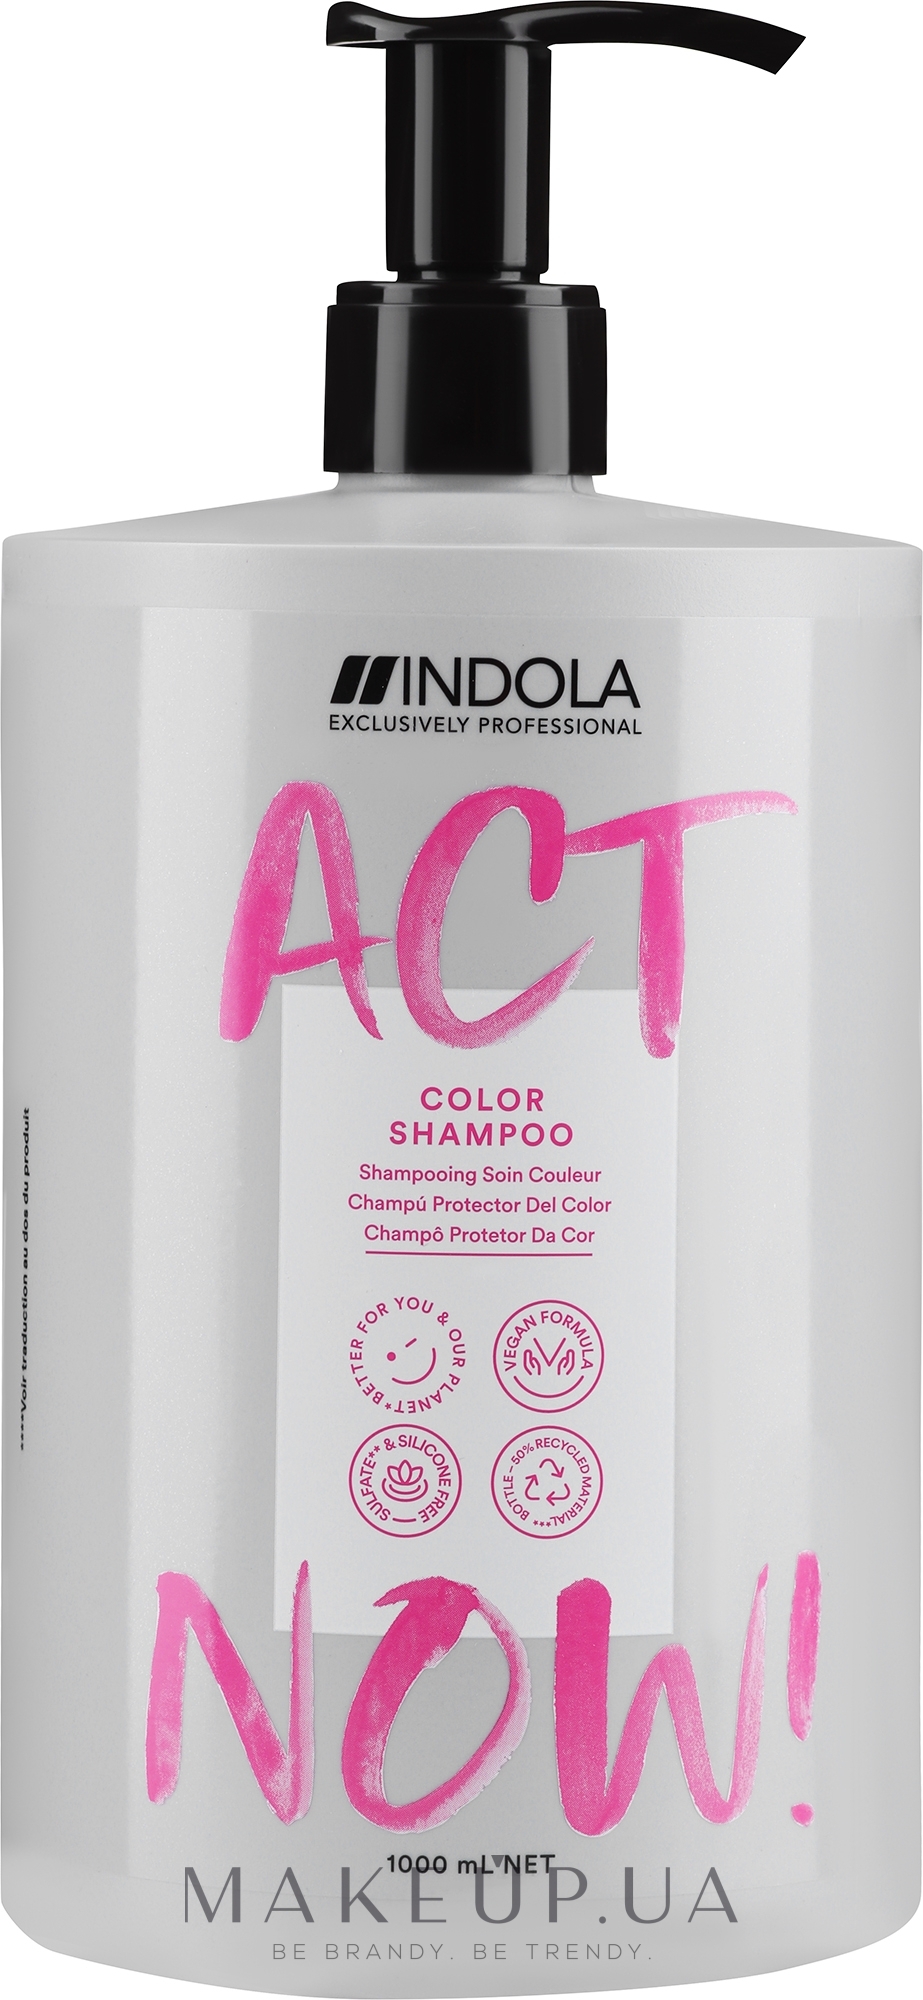 Шампунь для фарбованого волосся - Indola Act Now! Color Shampoo — фото 1000ml